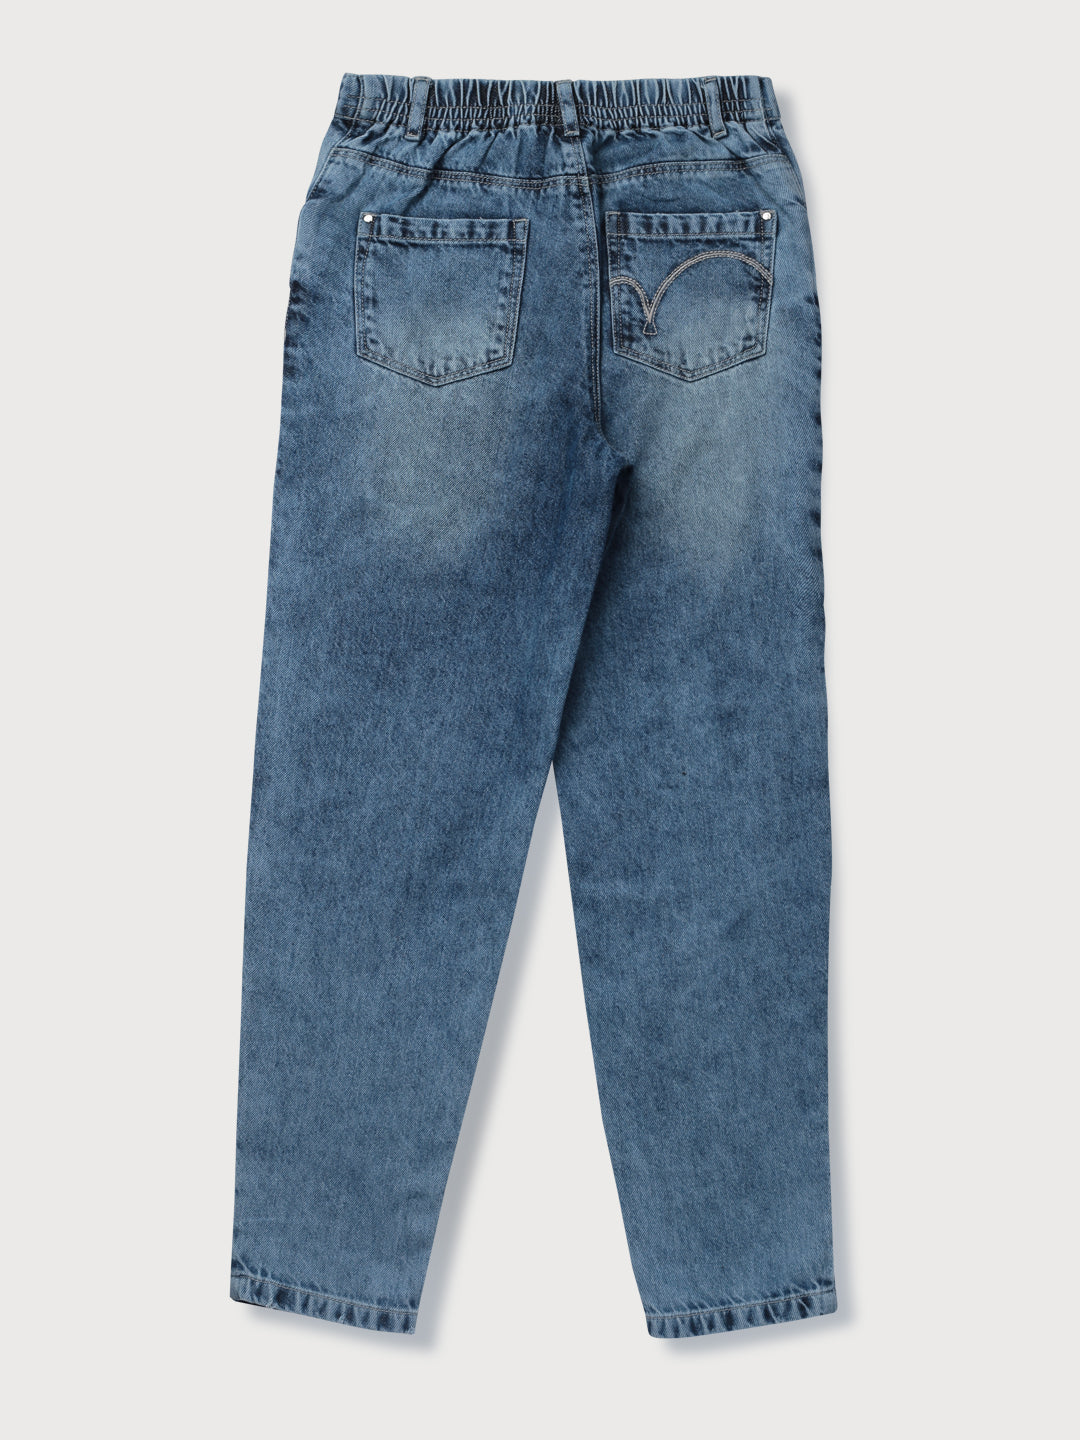 Girls Blue Washed Denim Jeans